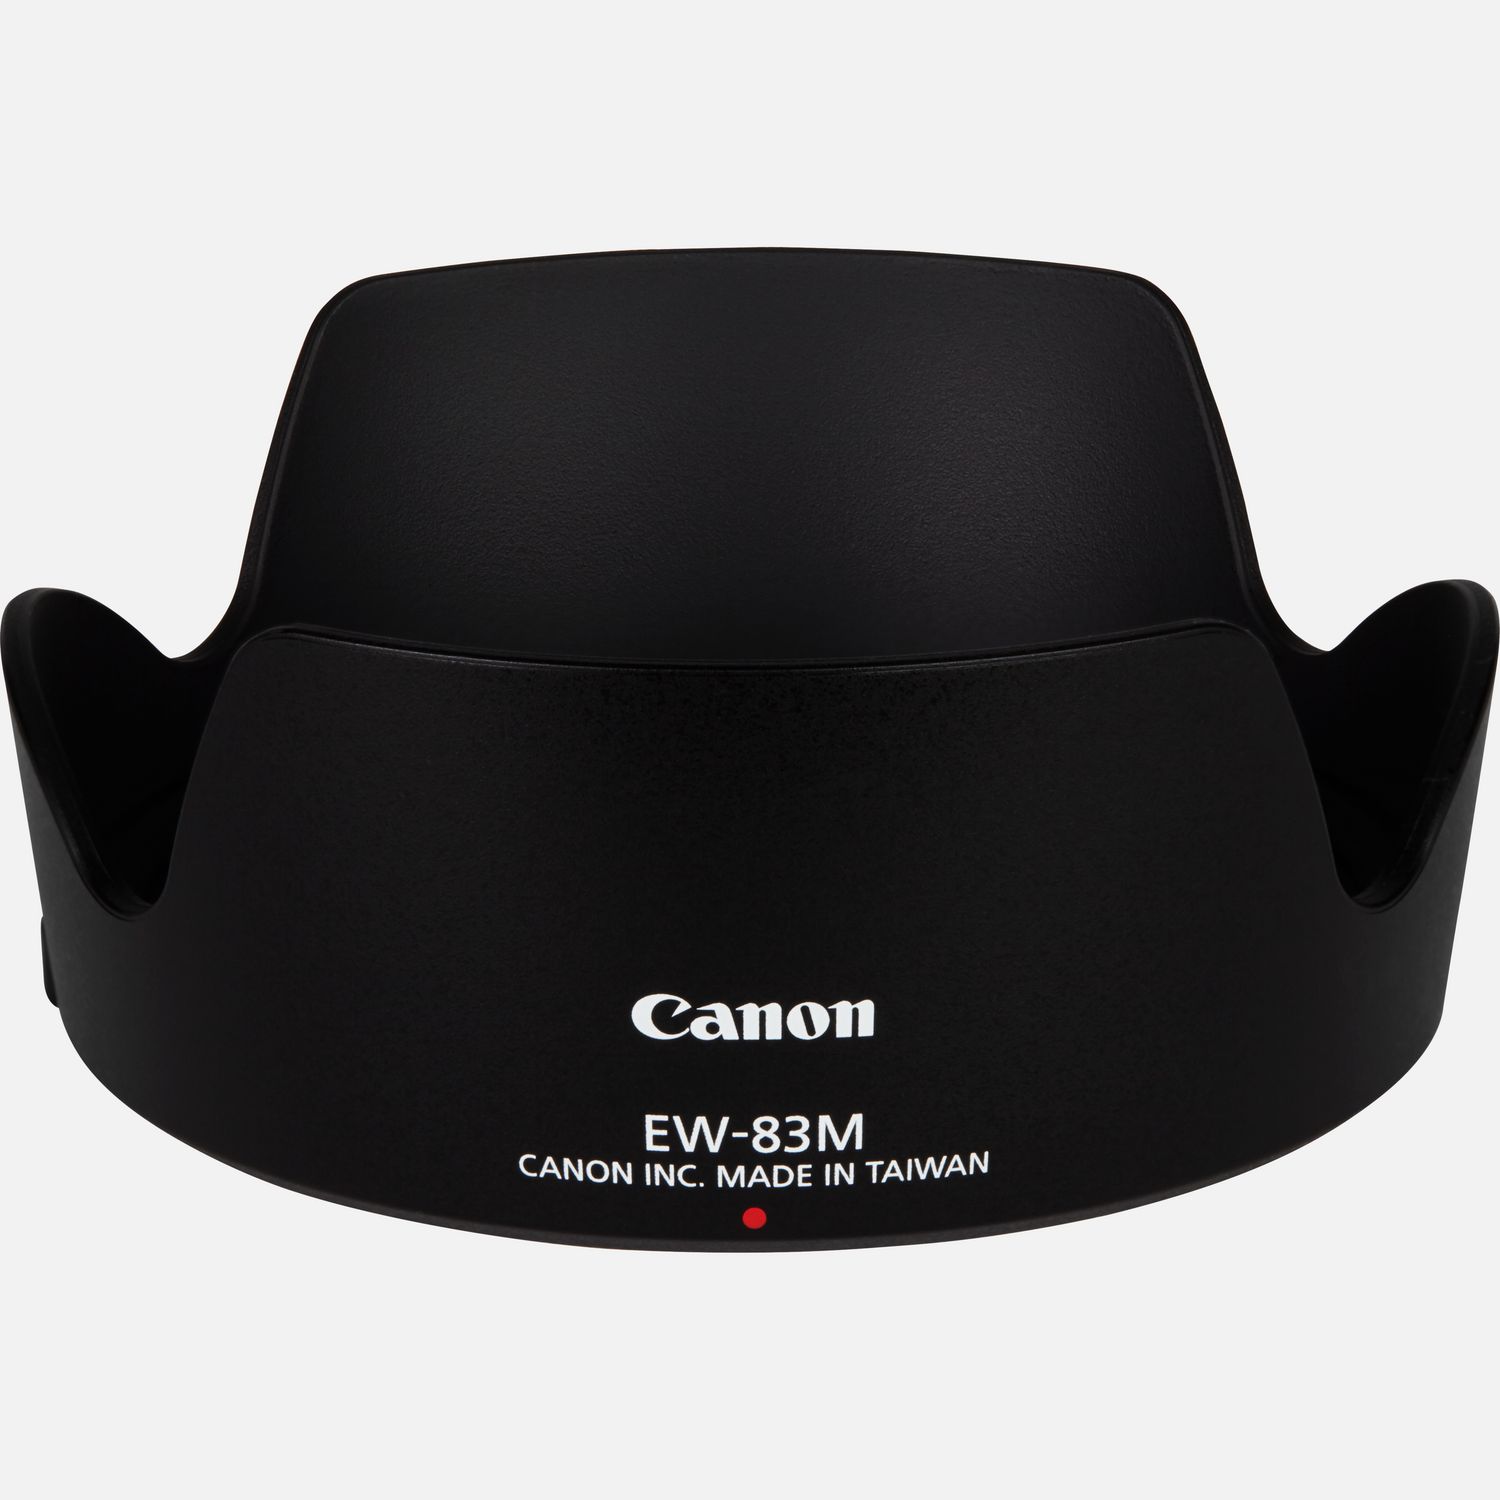 Passt auf das Objektiv EF 24-105mm 1:3,5-5,6 IS STM, reduziert Reflexionen, die durch direkt auf die Frontlinse auffallendes Licht hervorgerufen werden.